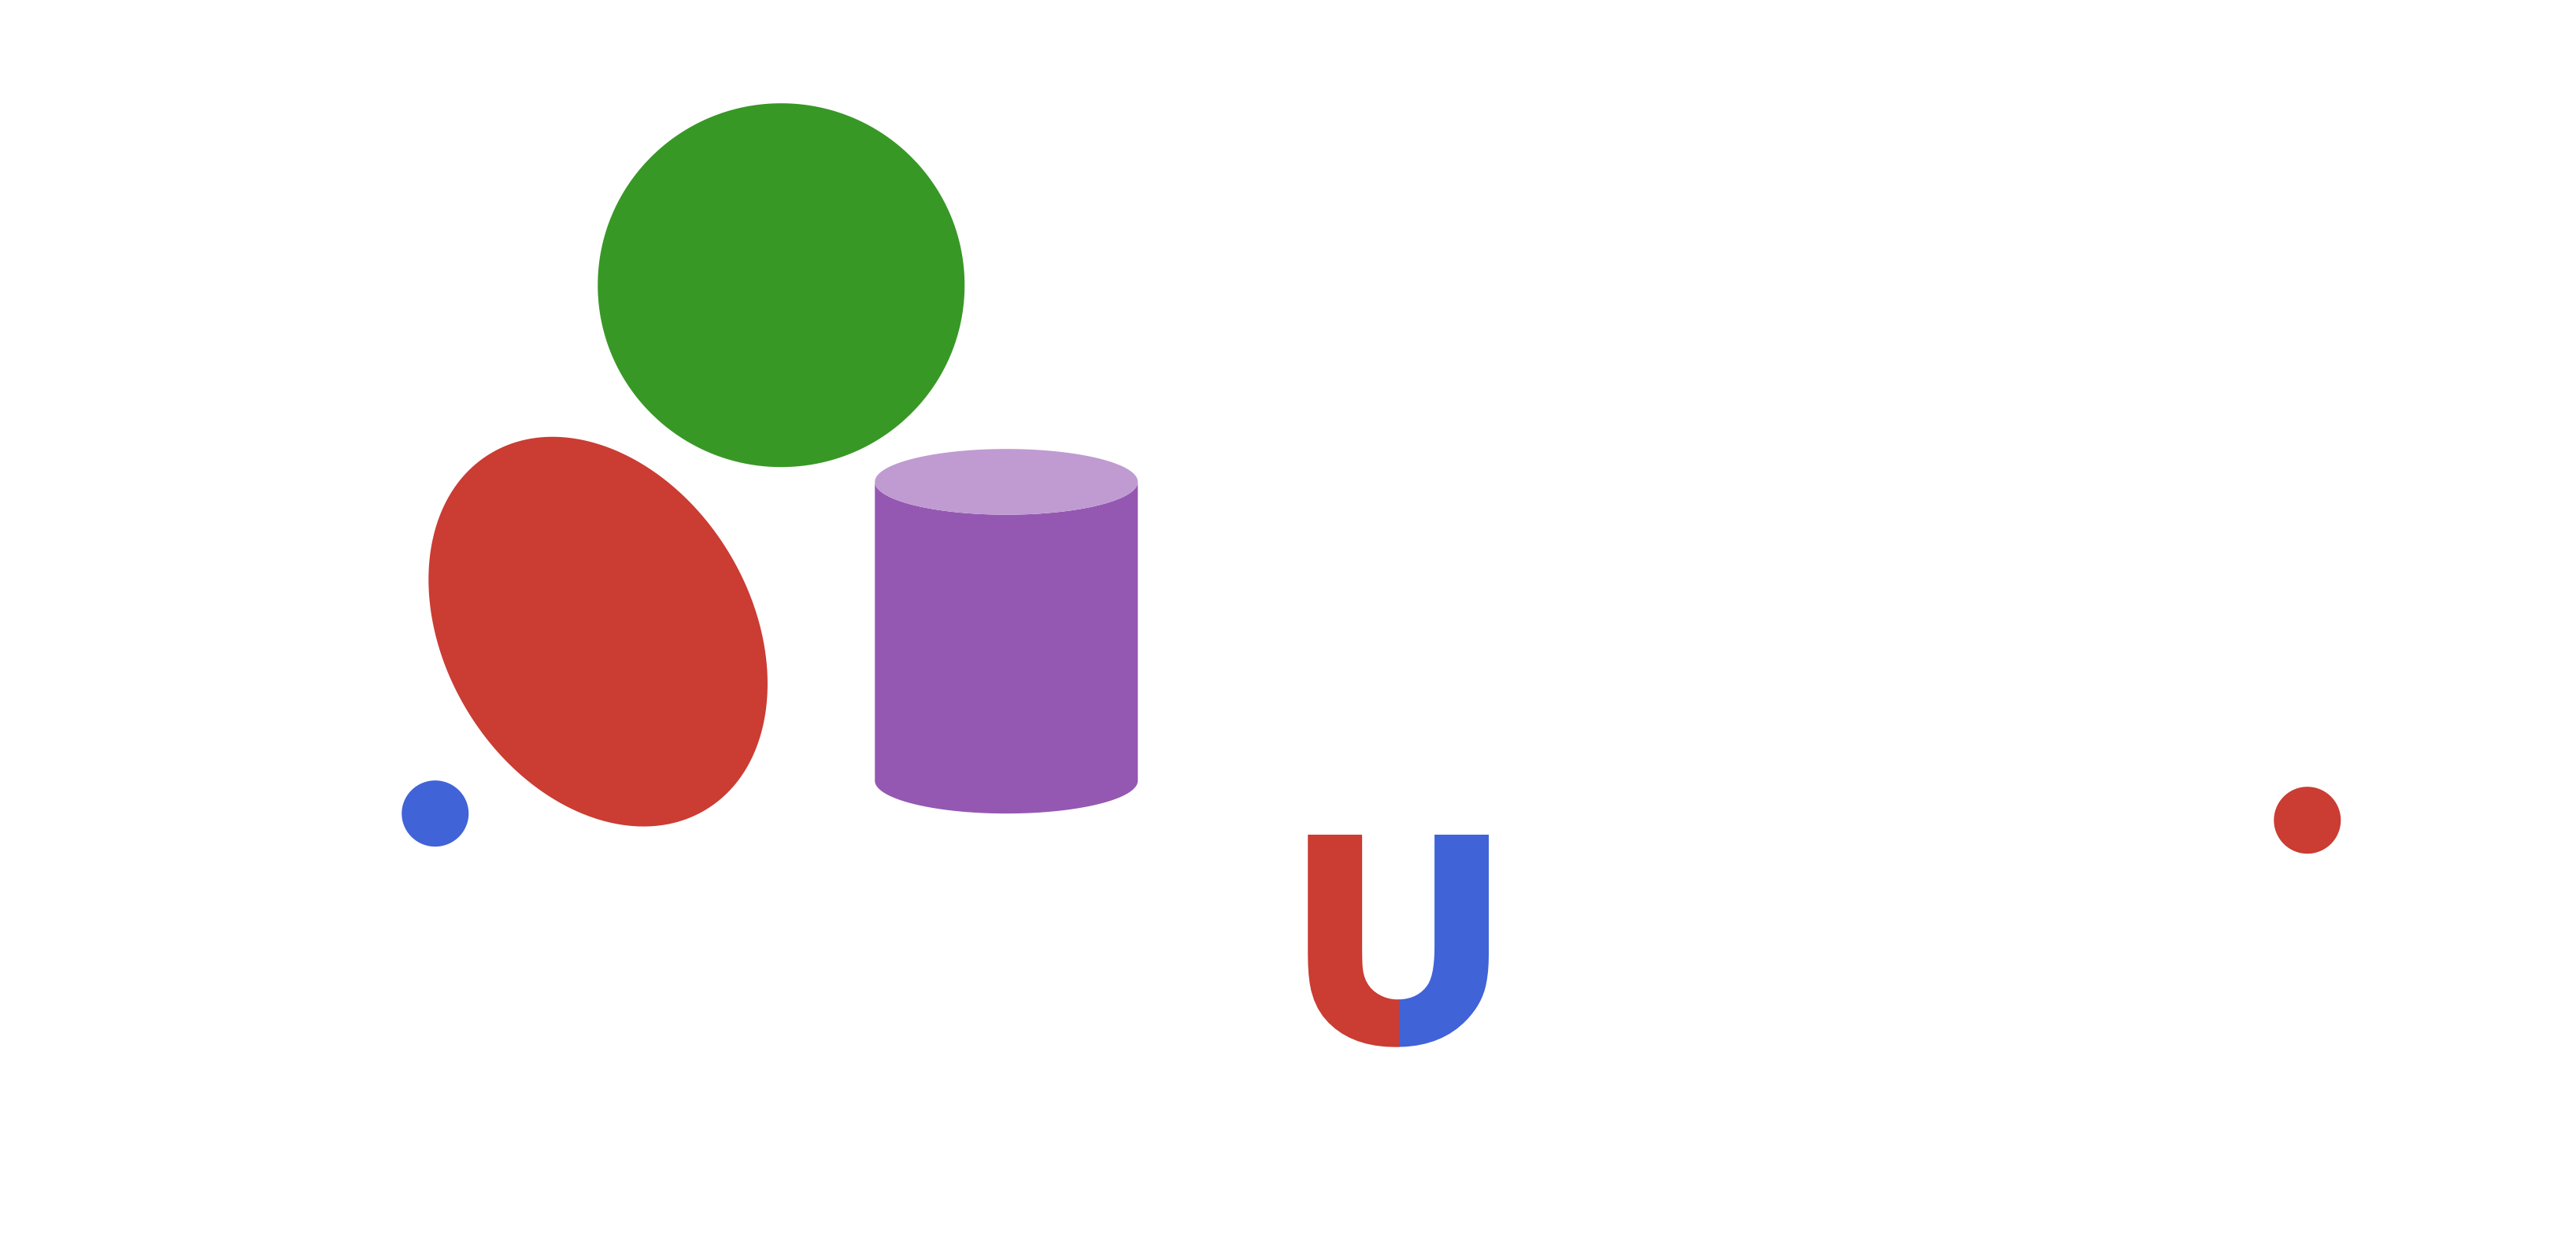 Microstructure.jl logo